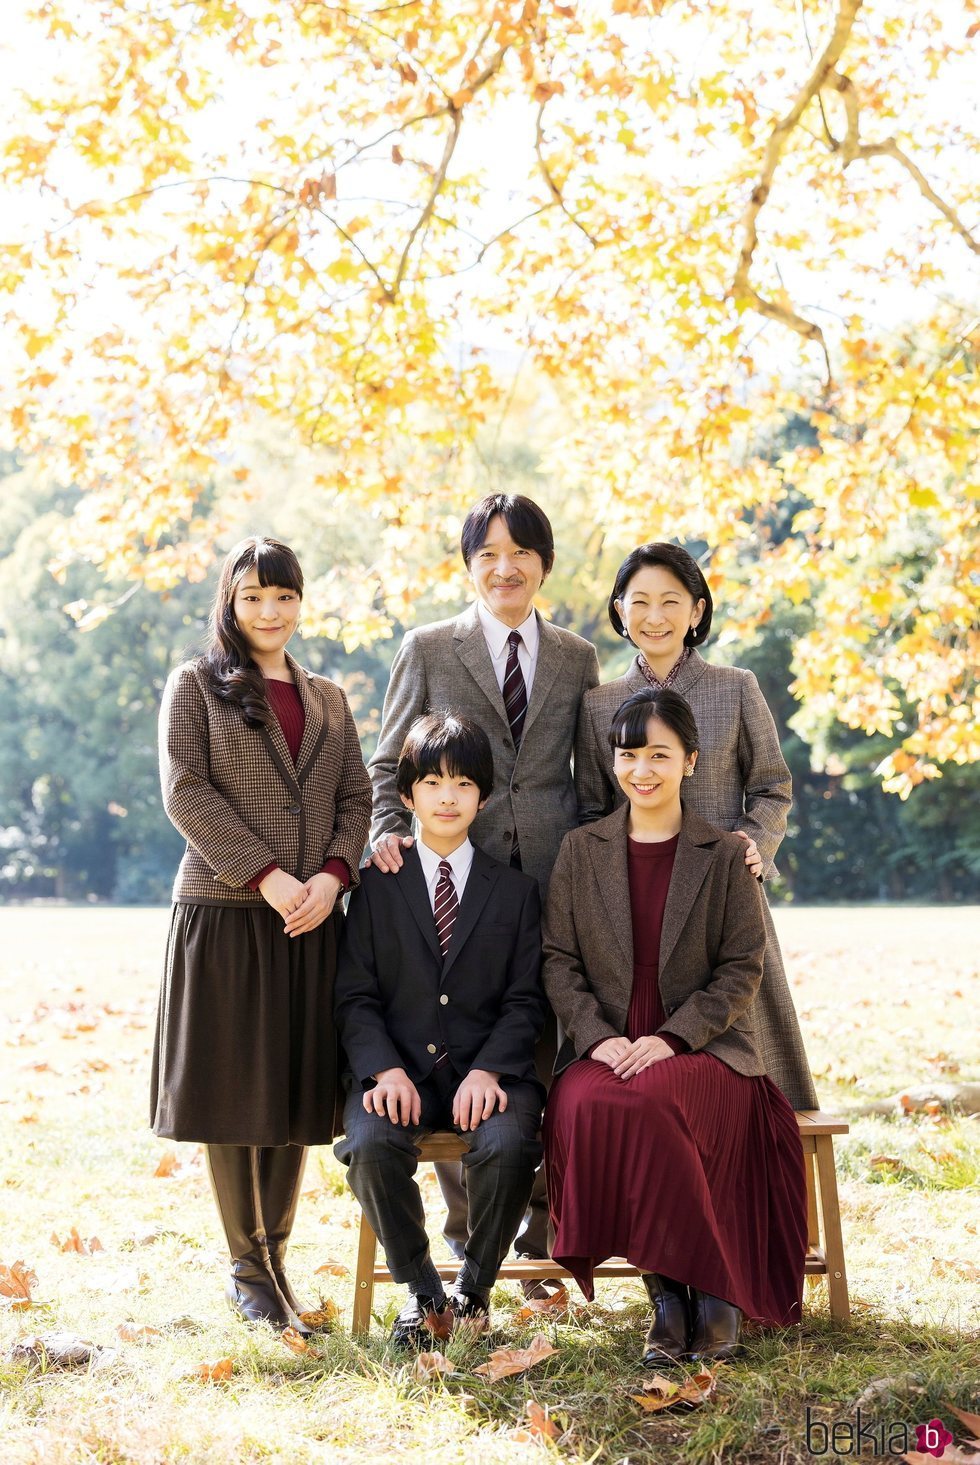 Akishino y Kiko de Japón con sus hijos Mako, Hisahito y Kako de Japón